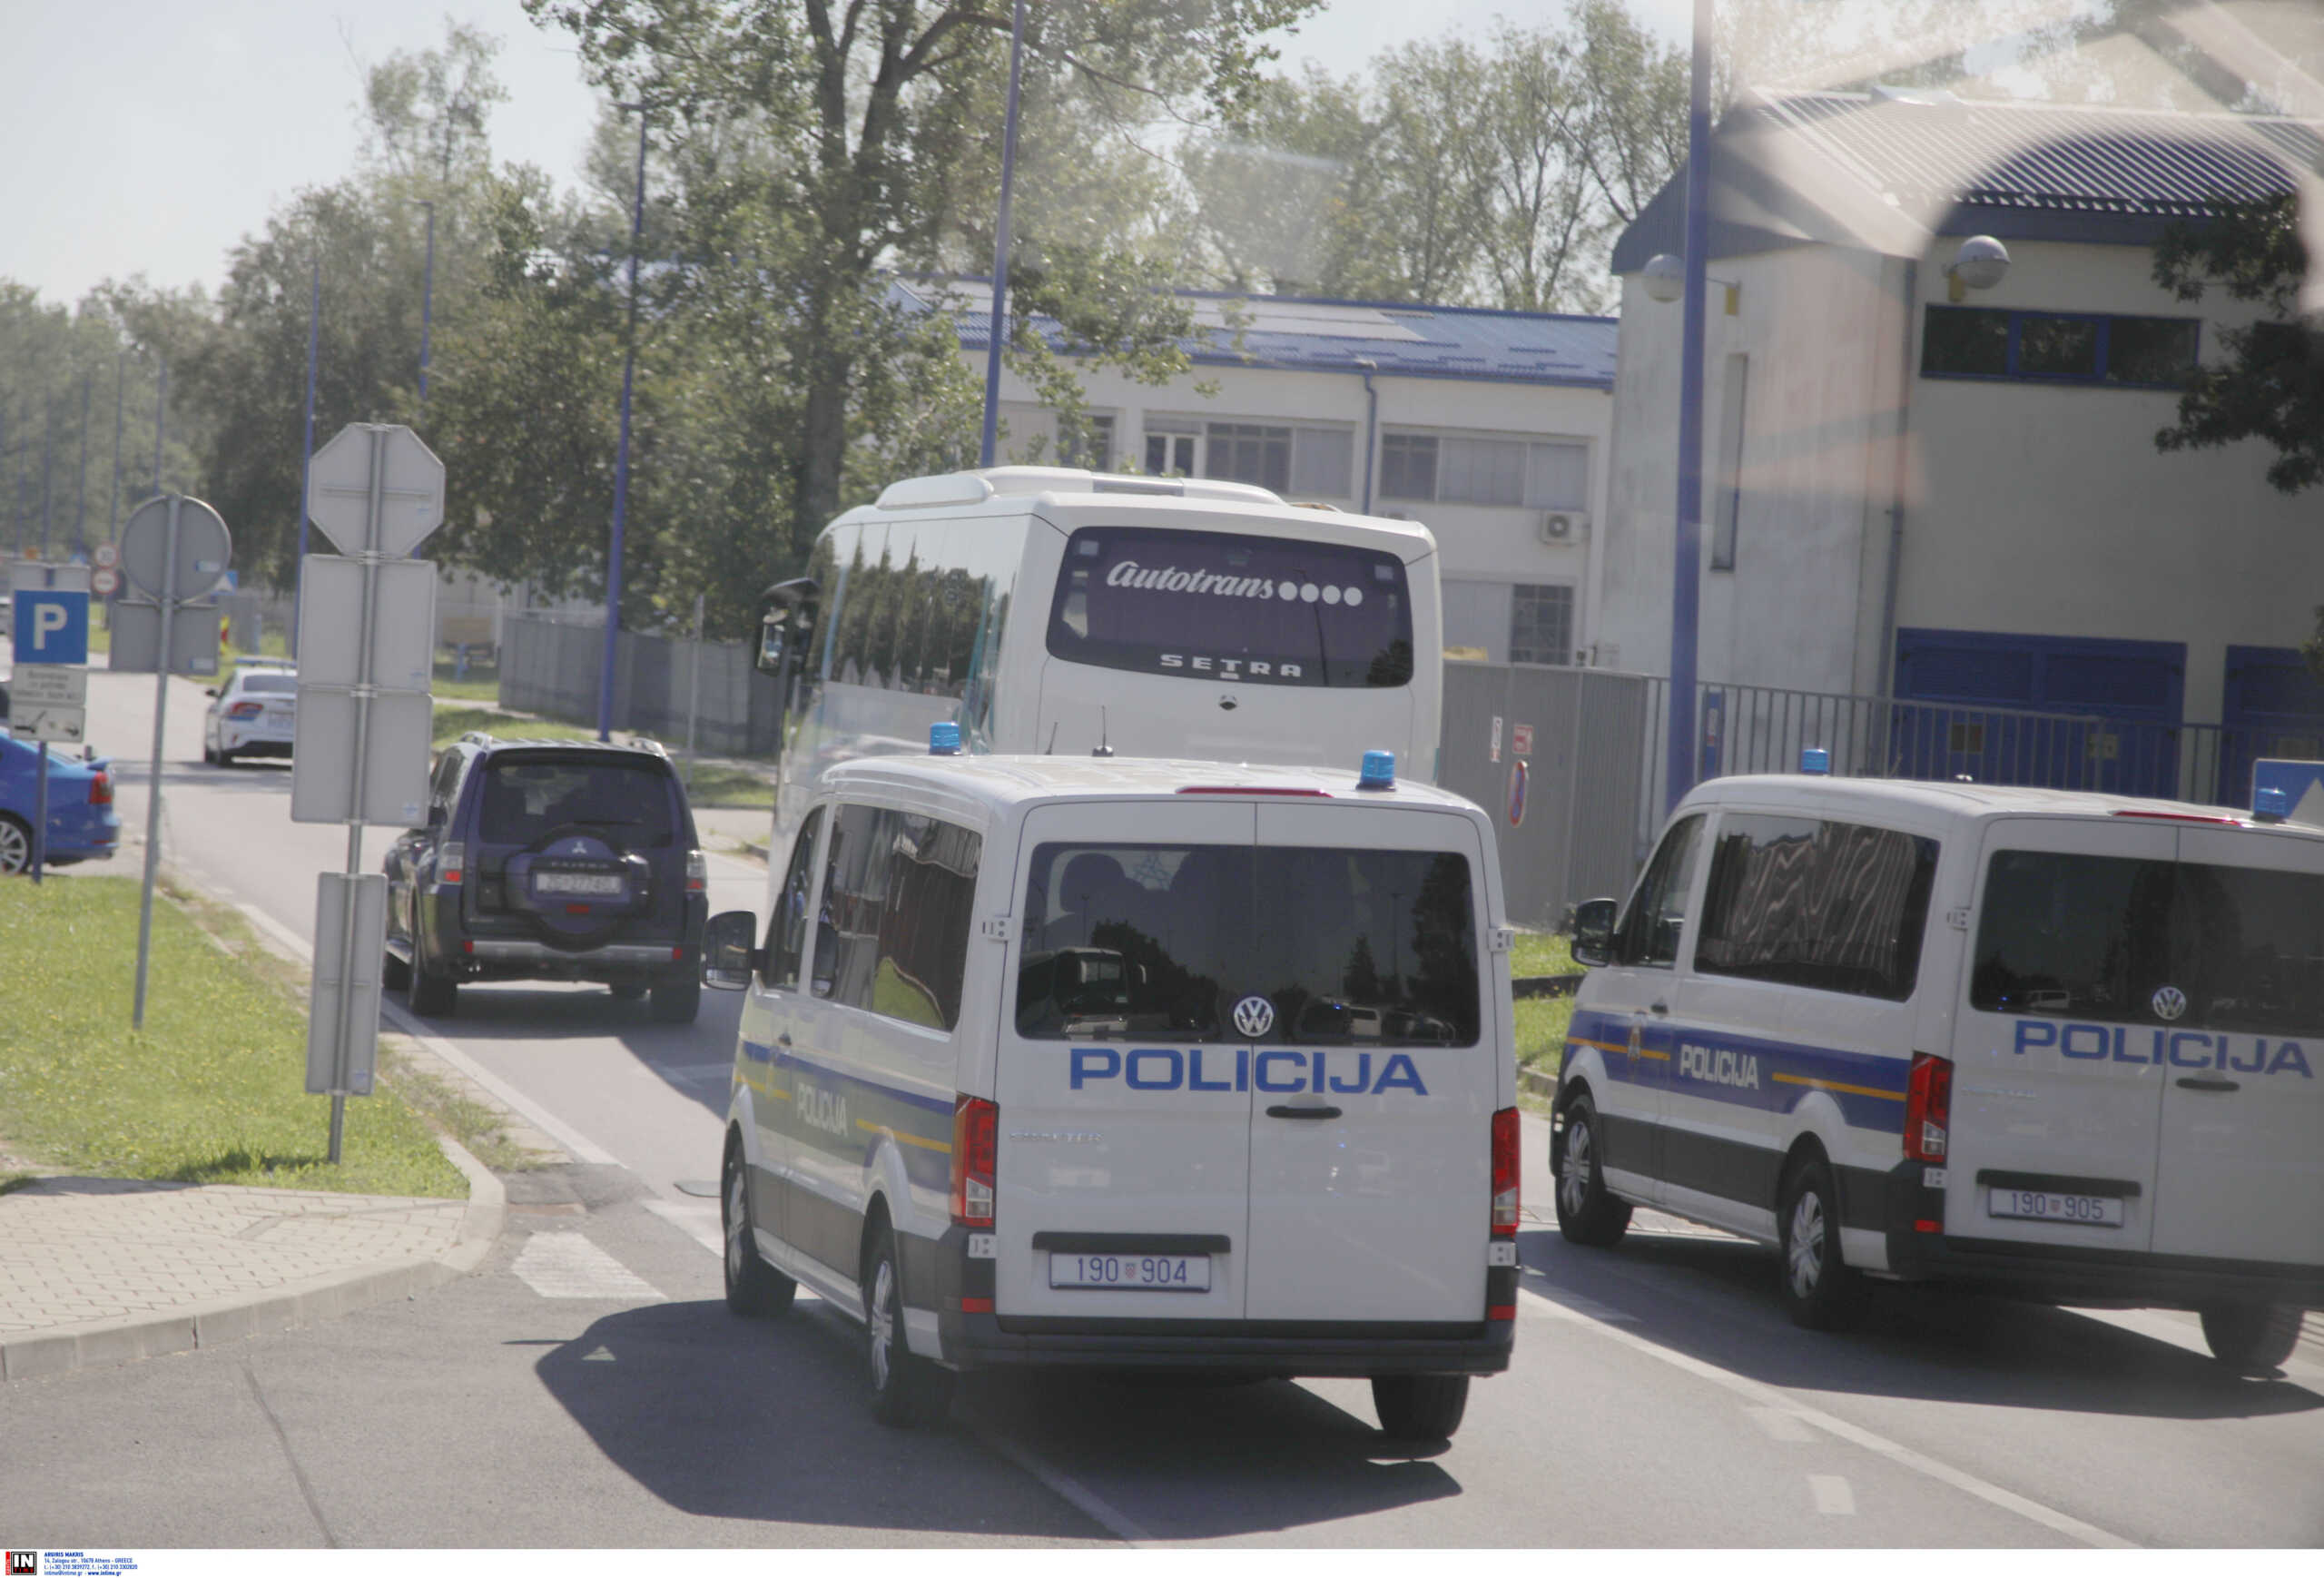 Ντιναμό Ζάγκρεμπ – ΑΕΚ: Δρακόντεια μέτρα ασφαλείας από την κροατική αστυνομία